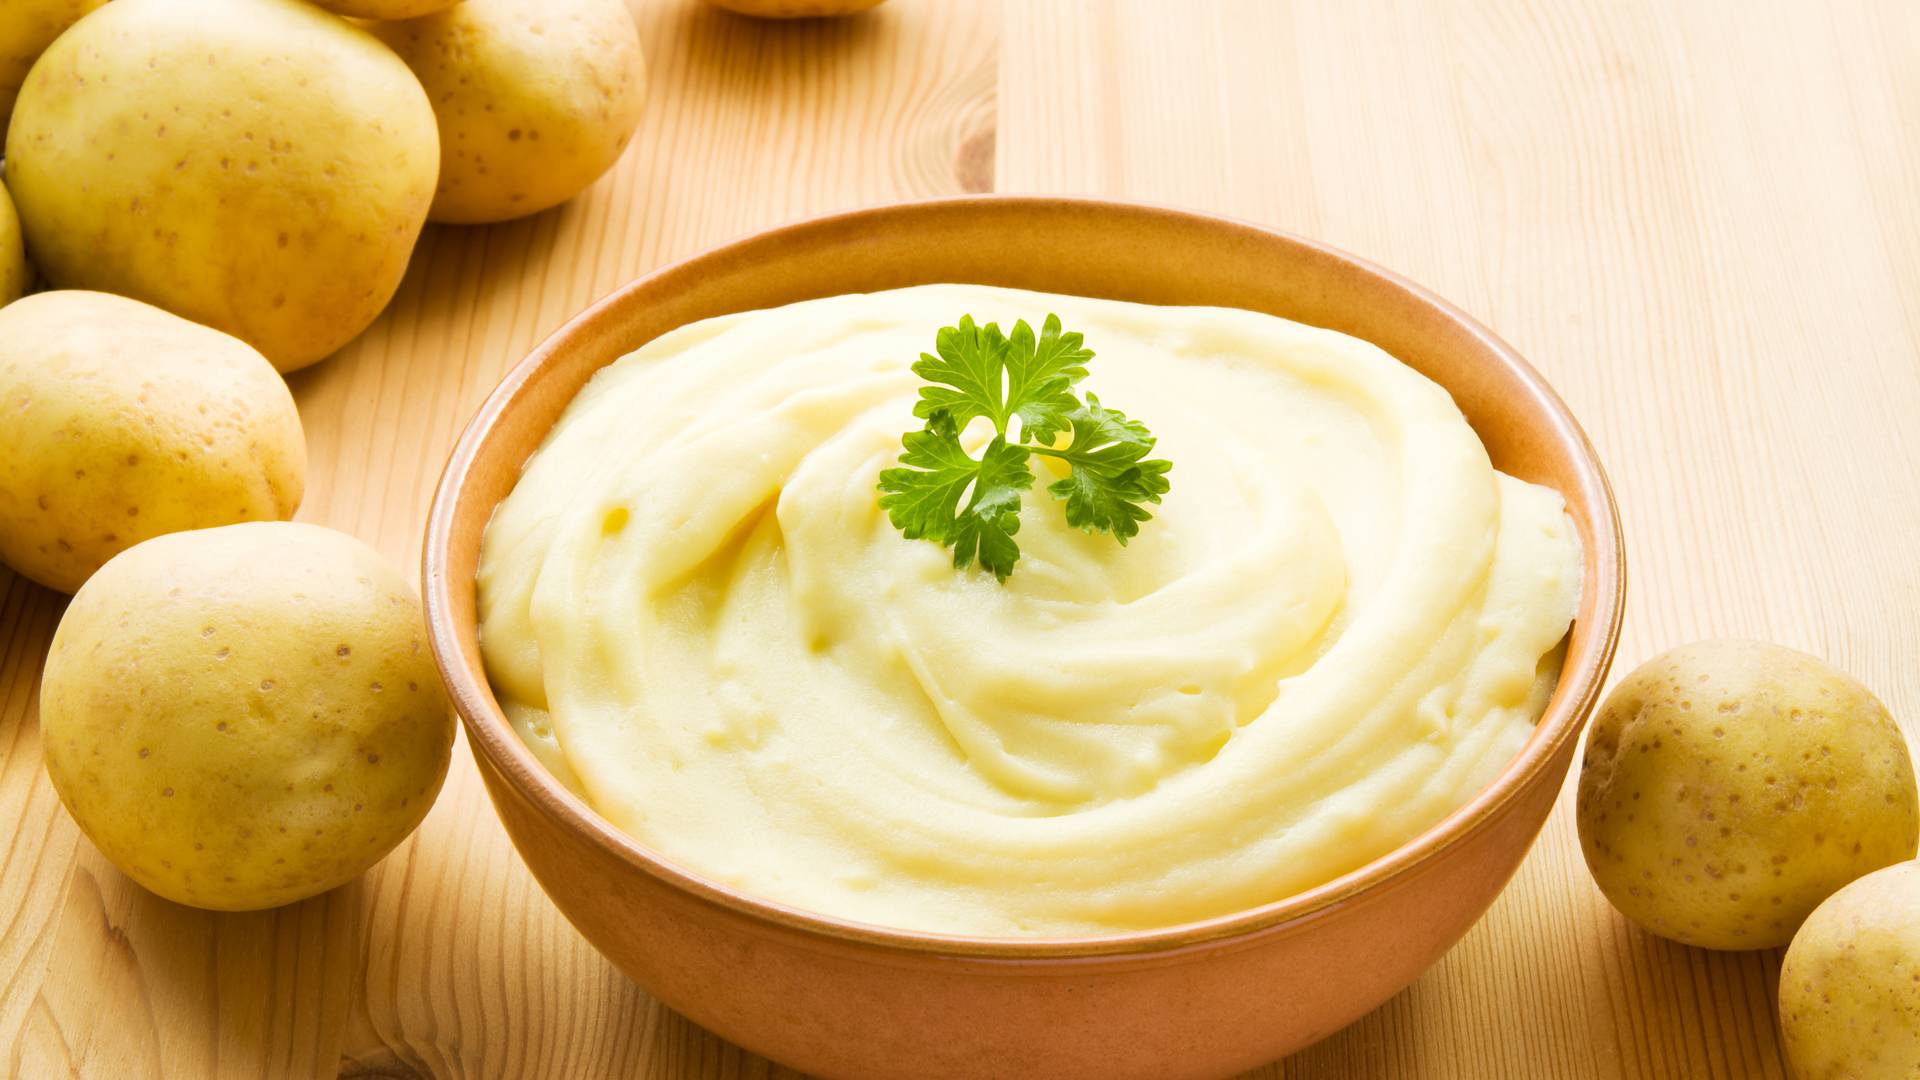 Sprawdzone sposoby na idealne purée - nie tylko z ziemniaków, ale też dyni i groszku